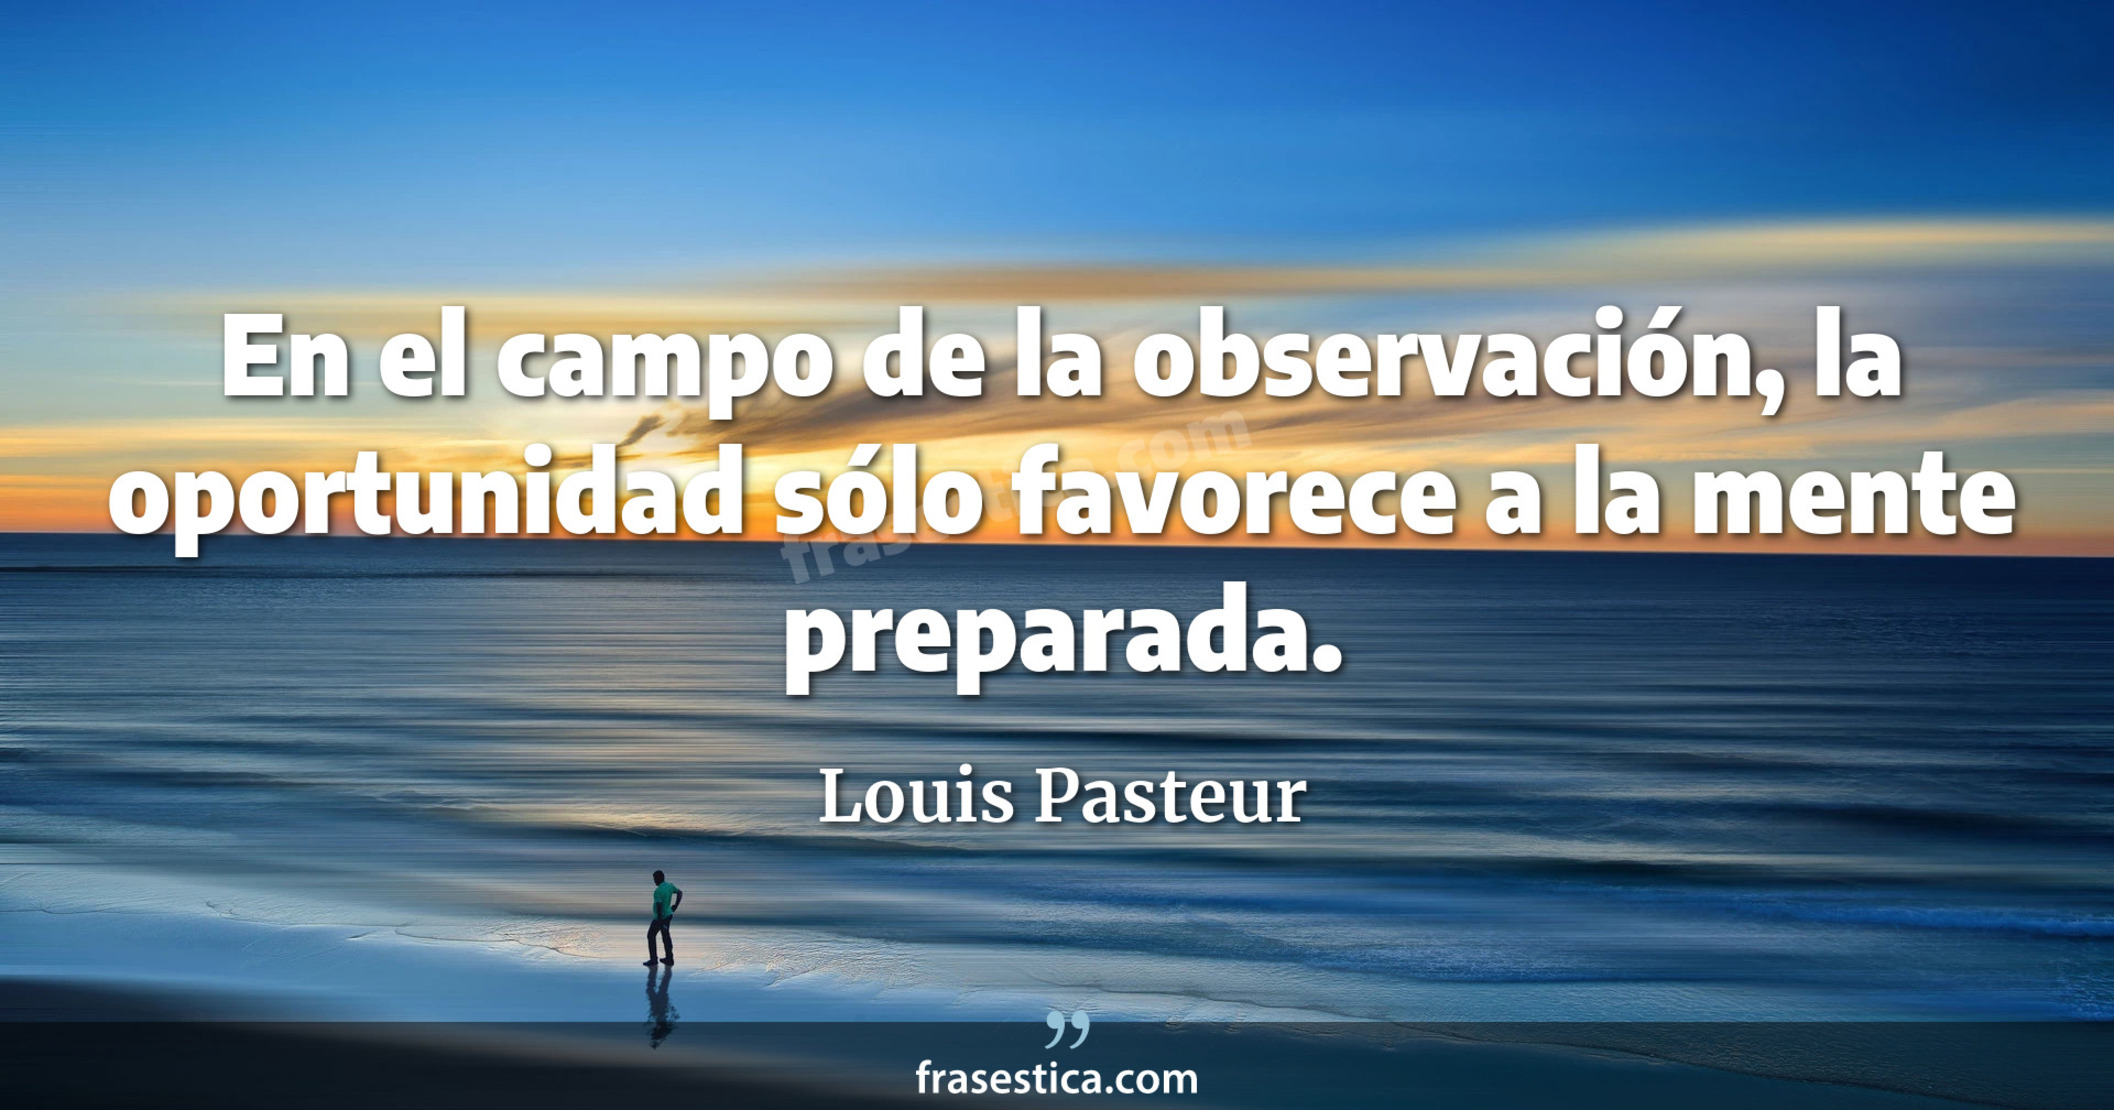 En el campo de la observación, la oportunidad sólo favorece a la mente preparada. - Louis Pasteur